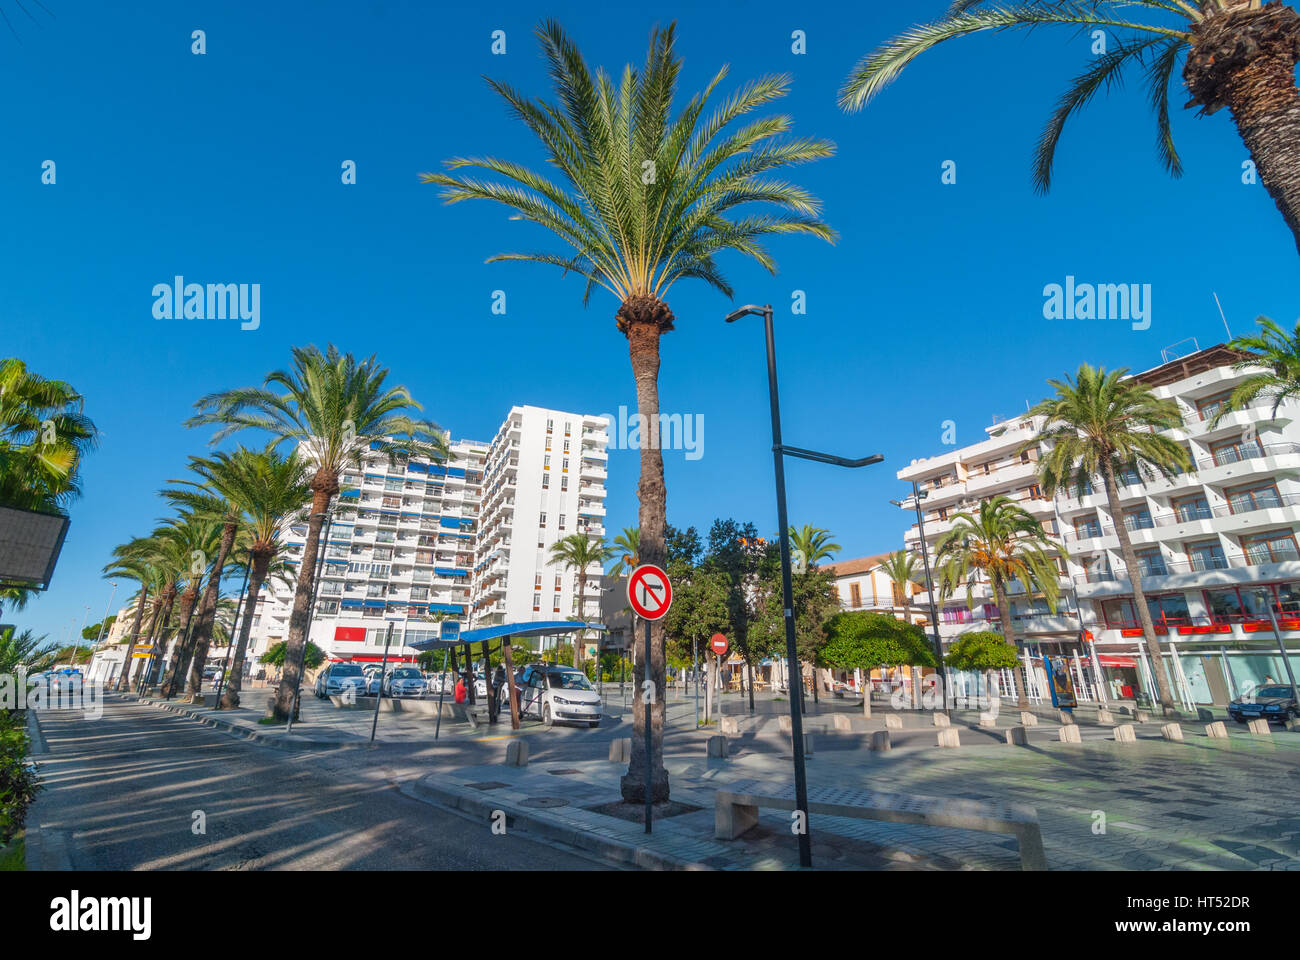 Sant Antoni de Portmany, Ibiza, Novembre 6th, 2013: Turismo in Spagna. La gente in attesa in corrispondenza di una stazione dei taxi. Fiancheggiata da palme parco pedonale & fontana. Foto Stock